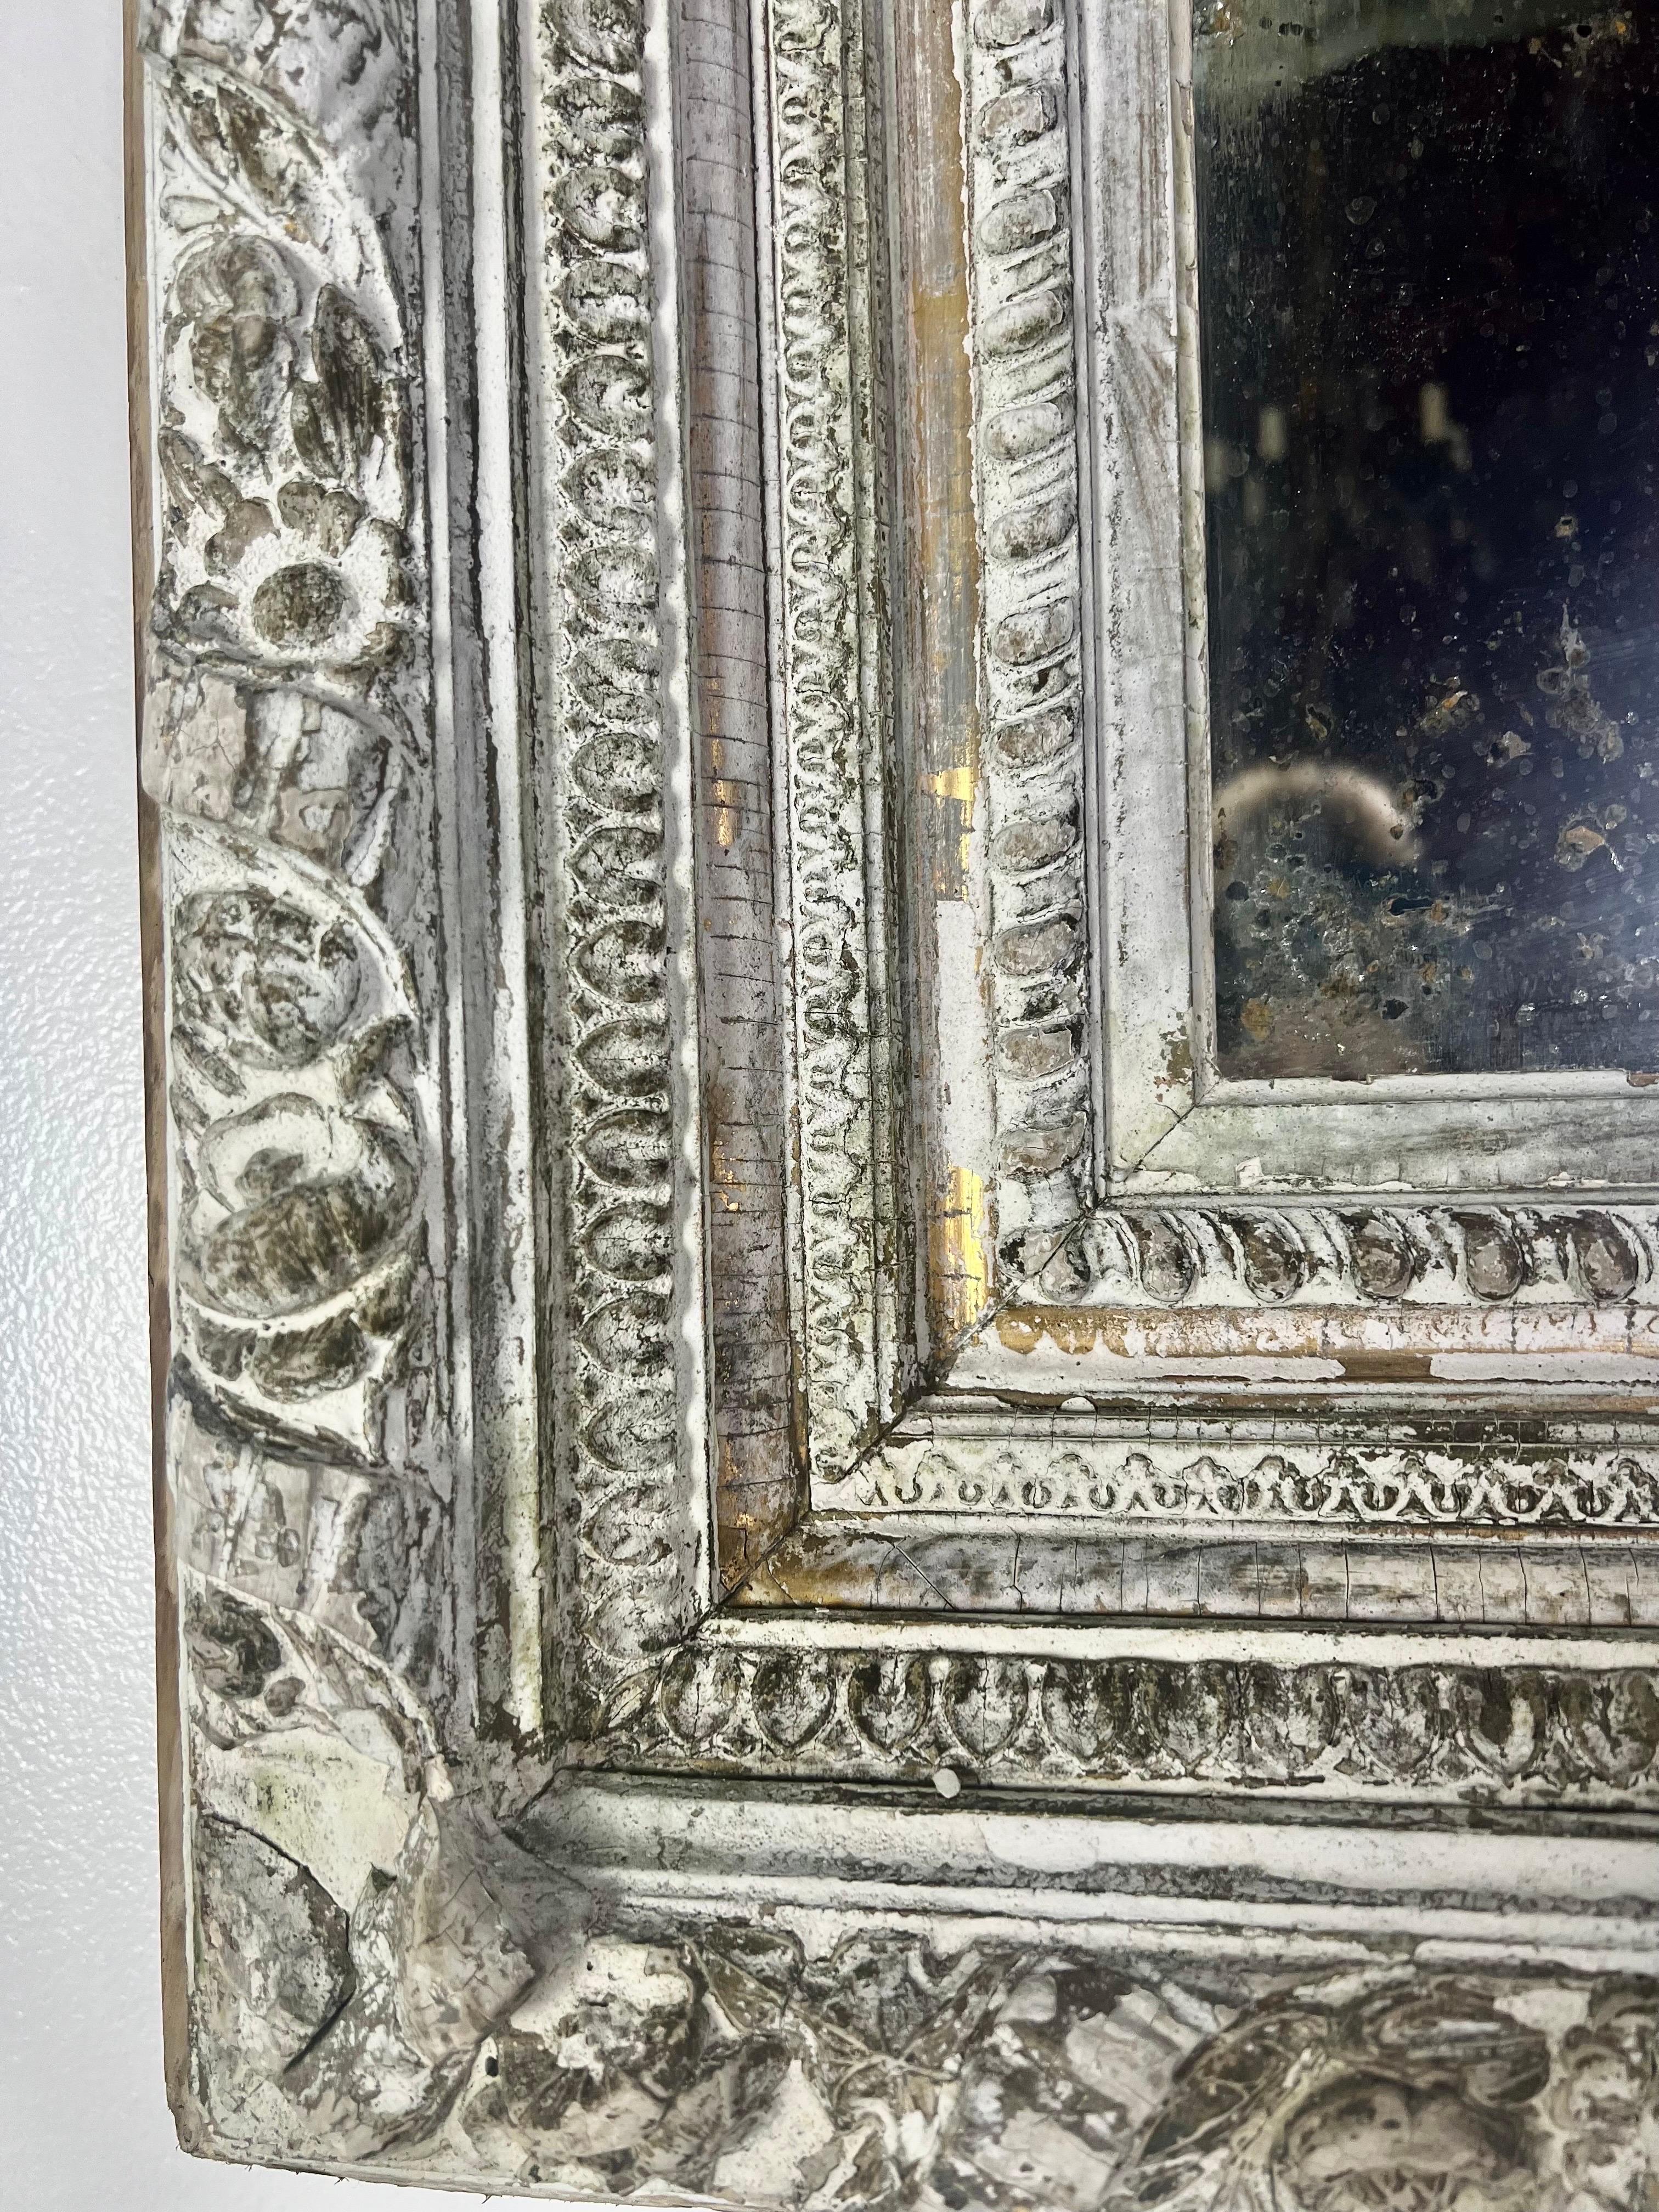 Miroir en bois sculpté et gesso du 19ème siècle.  Il y a des vestiges d'une finition à la feuille d'or datant d'il y a plusieurs années, mais le miroir est de couleur blanche/grise.  Le cadre est orné de détails finement sculptés.  La finition est